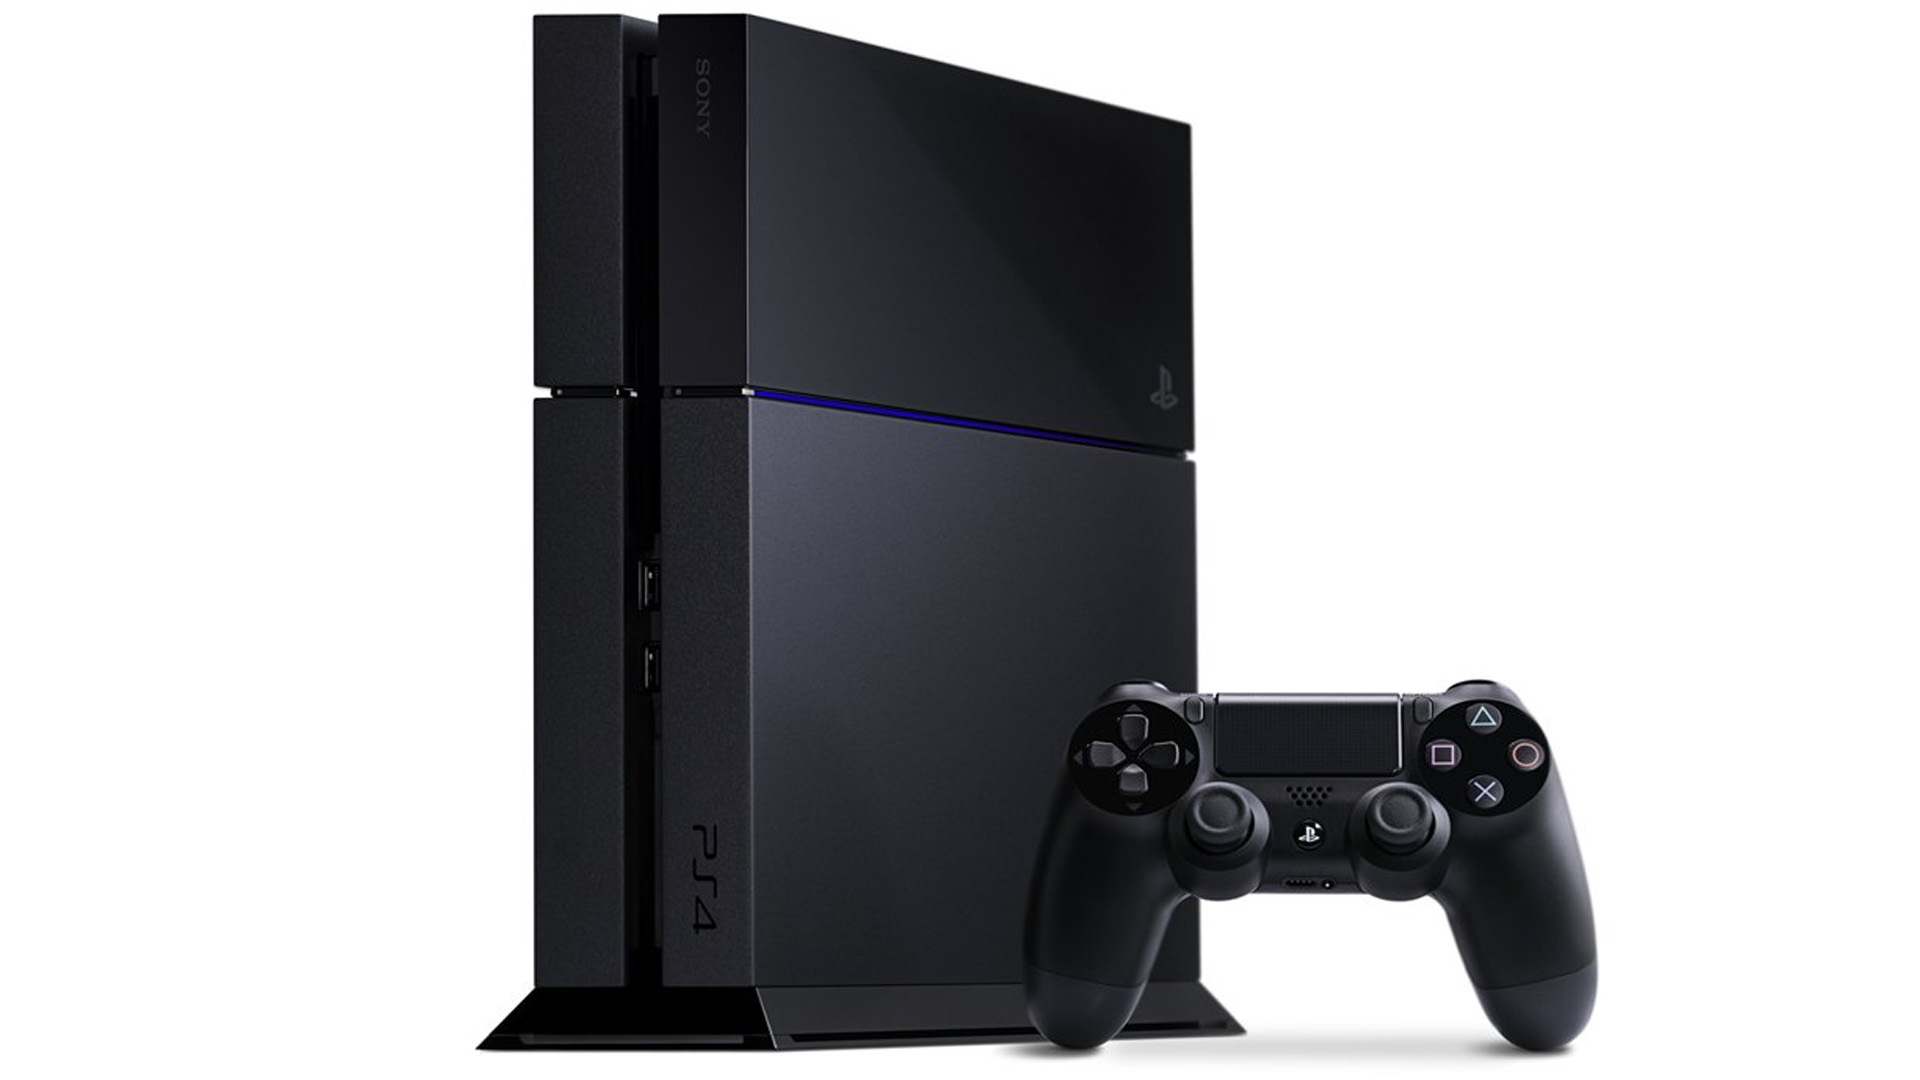 Промо-фото PS4. 10 лет исполнилось PlayStation 4